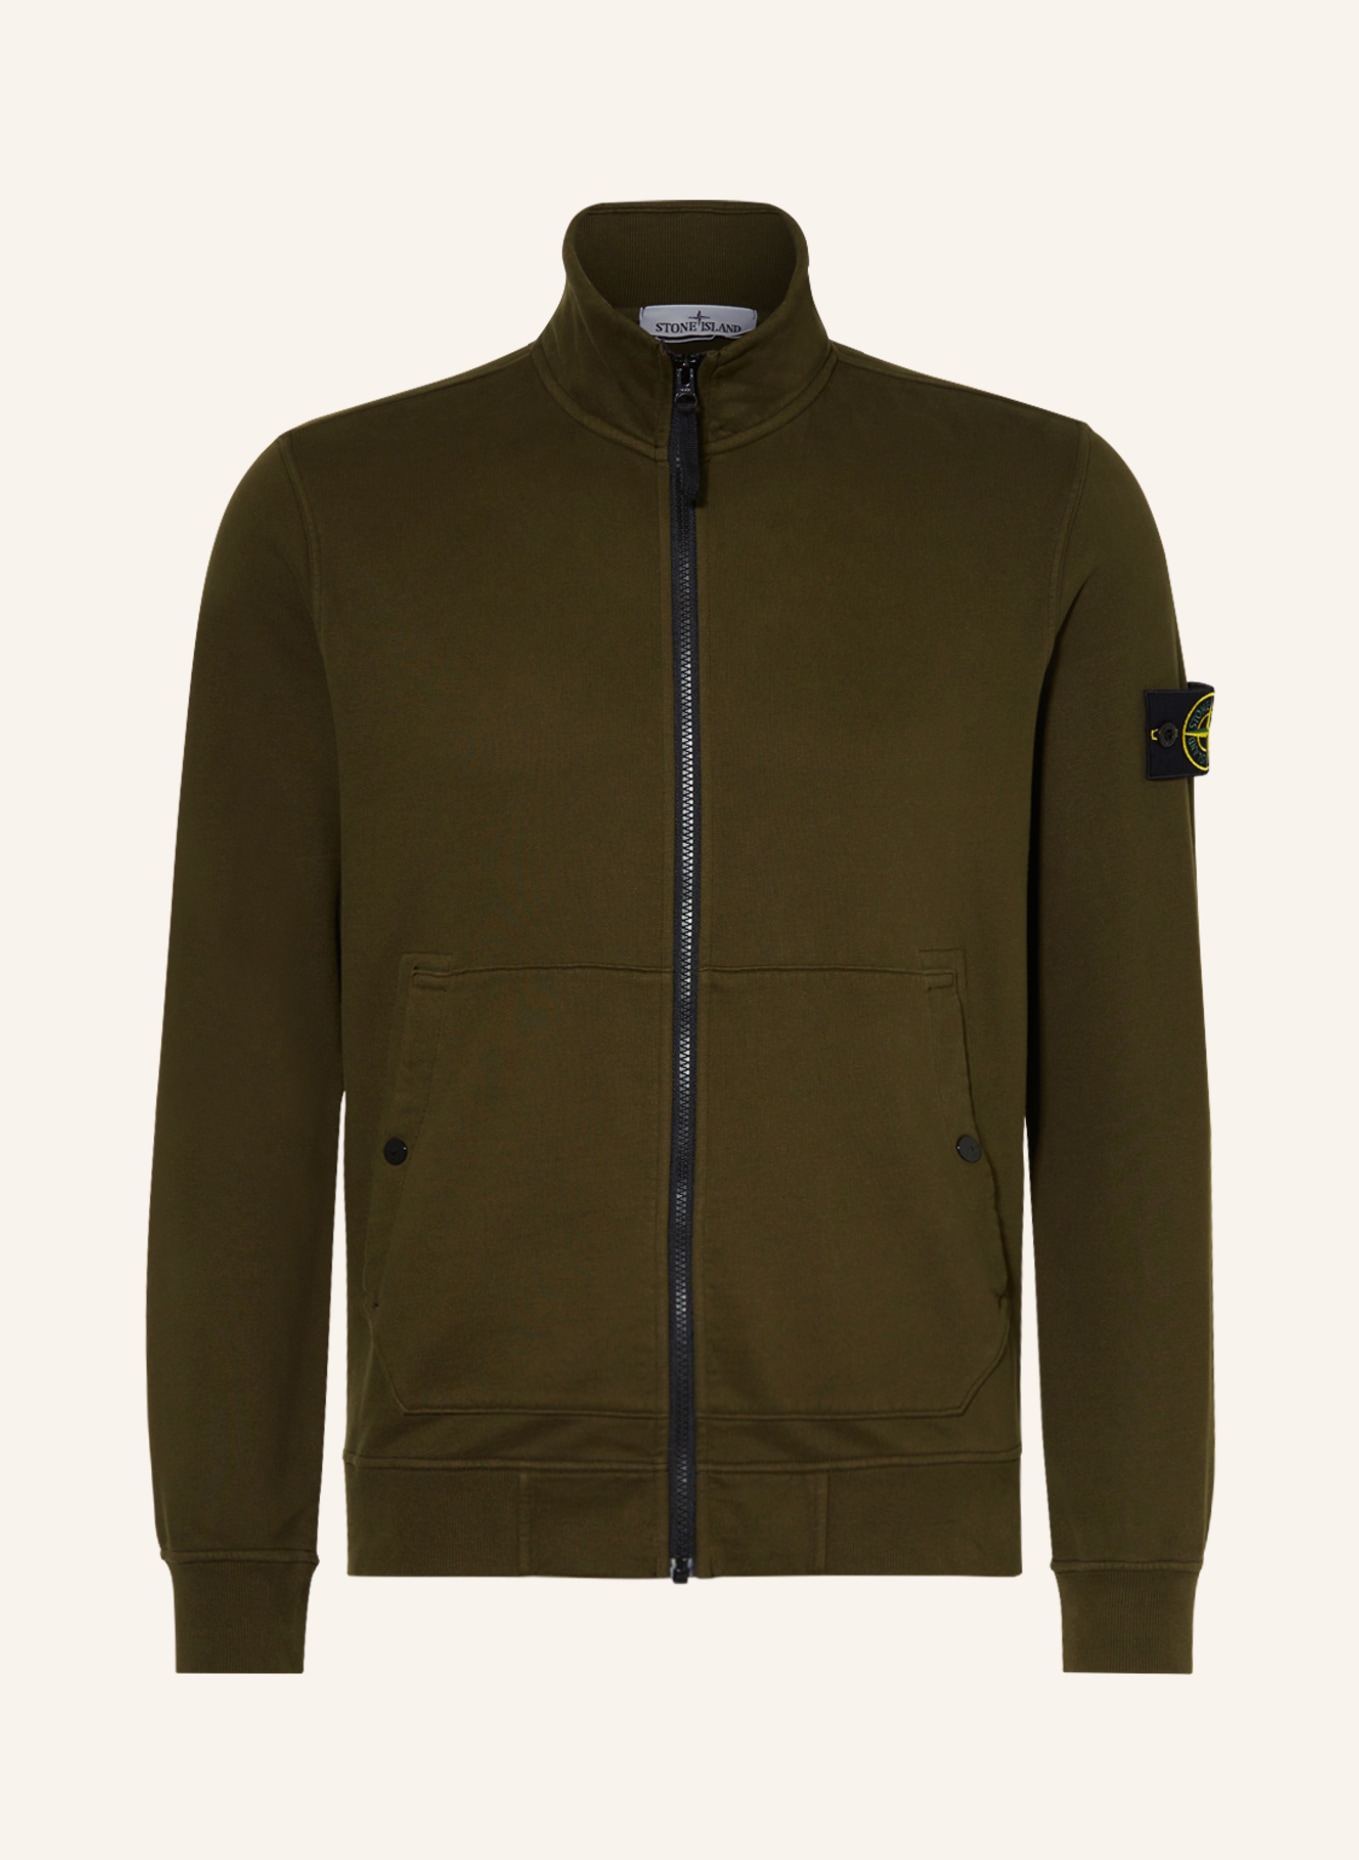 STONE ISLAND Sweat jacket, Color: OLIVE (Image 1)